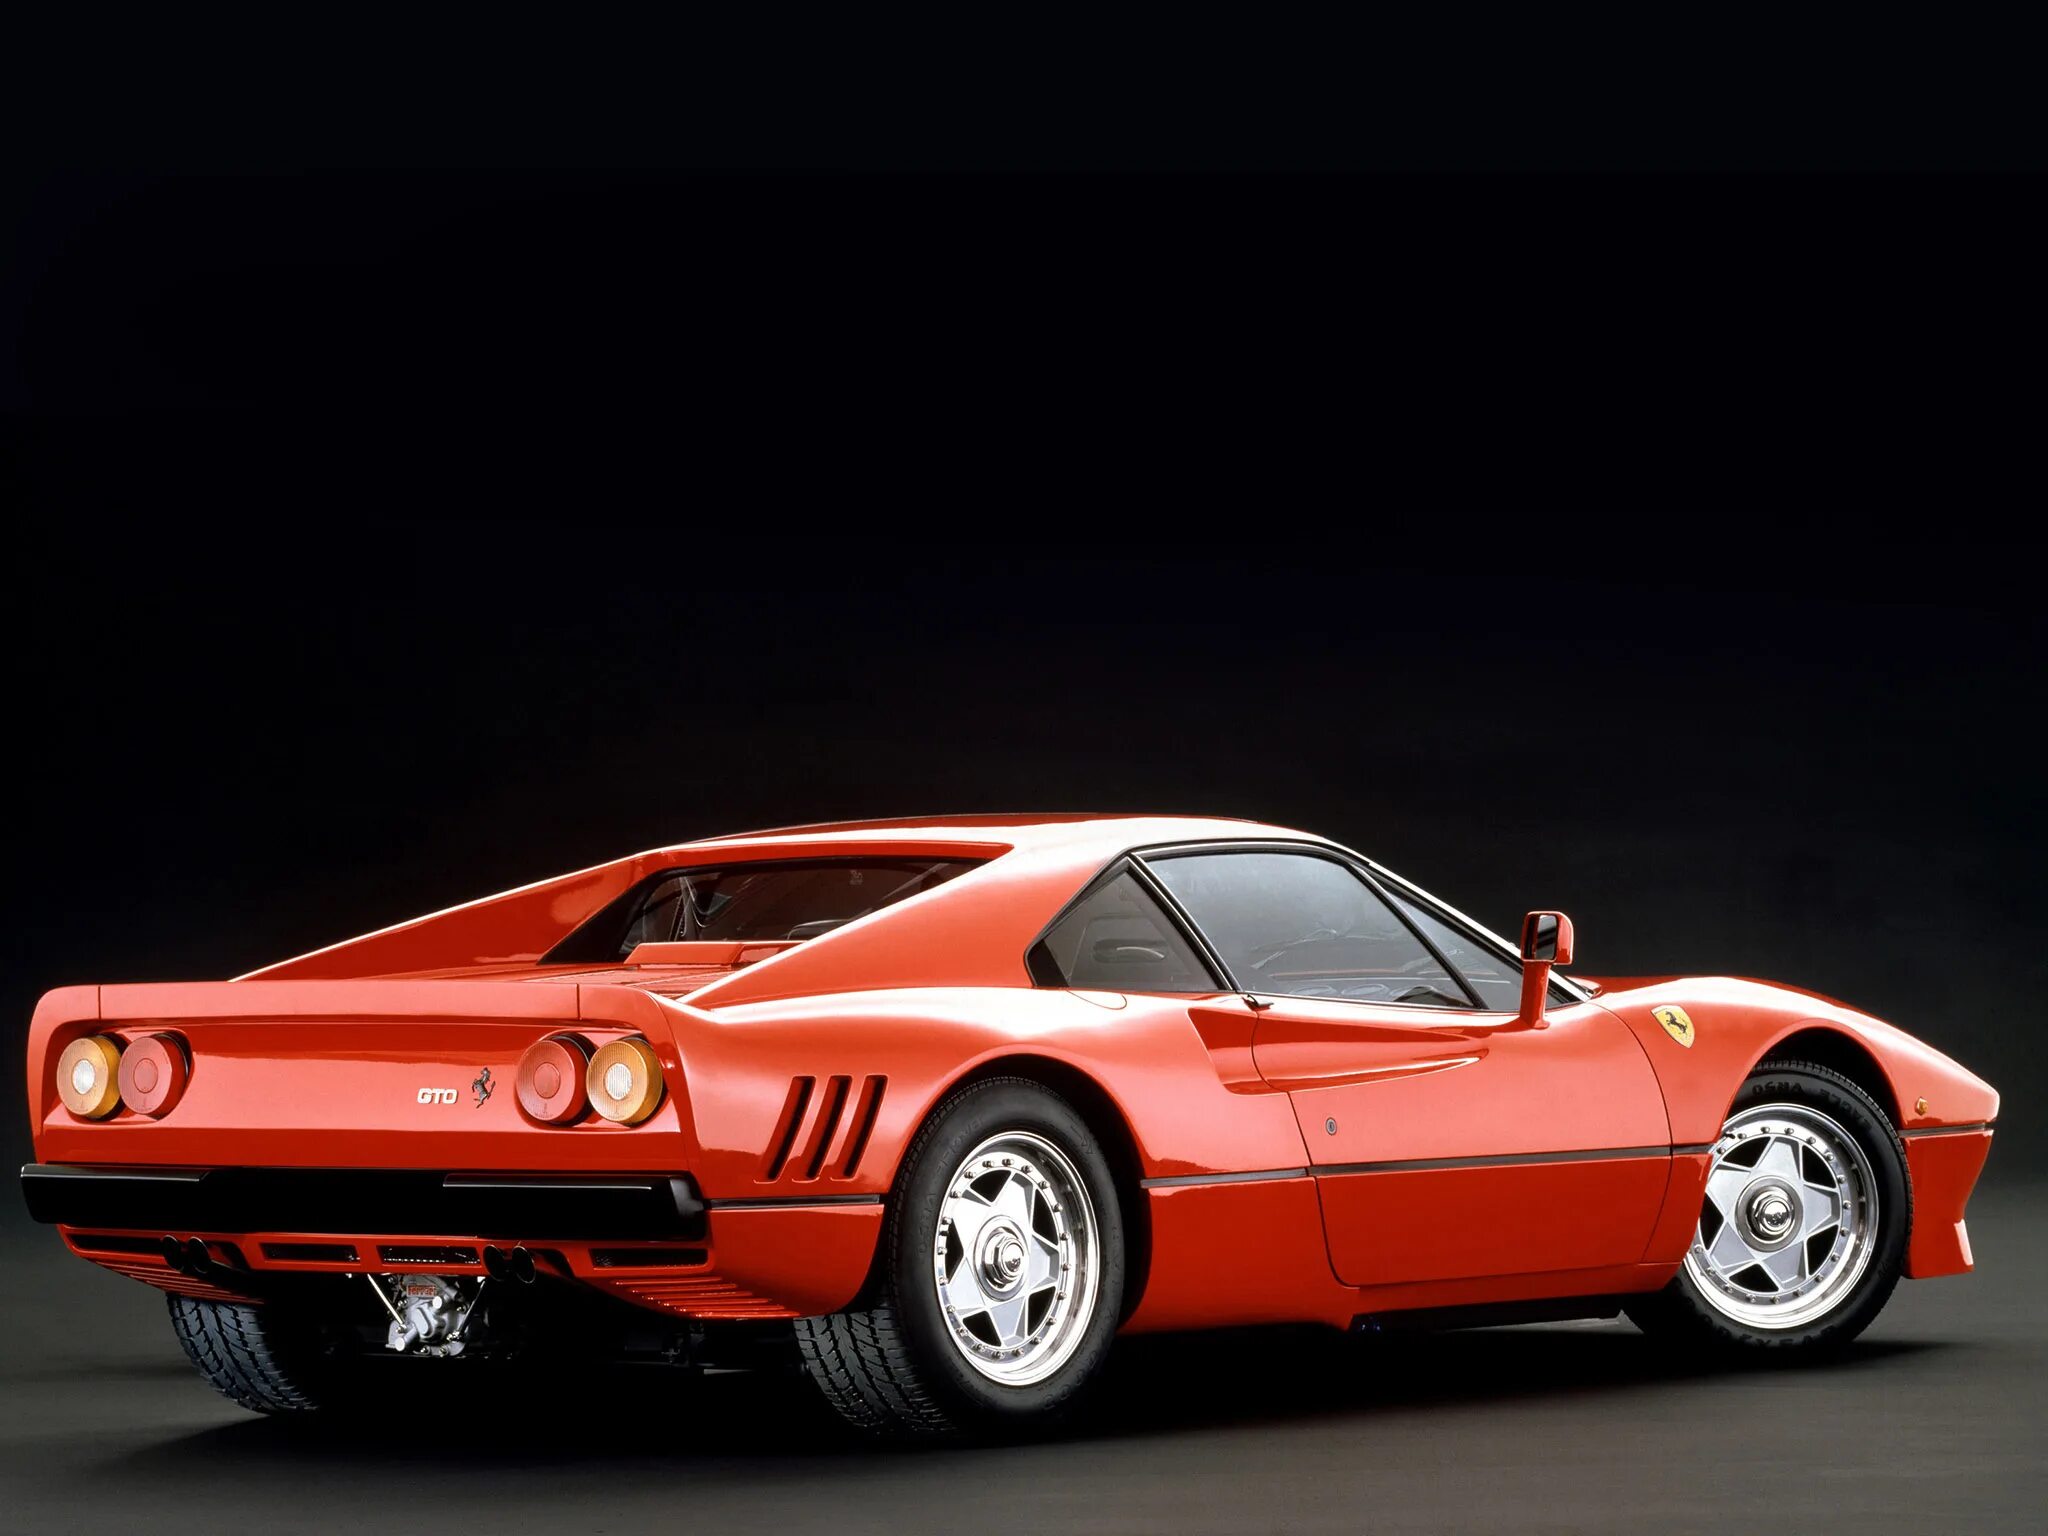 Ferrari 288 gto. Феррари GTO 1984. Ferrari 288 GTO 1984. Феррари 288 GTO. Ferrari 258gto.